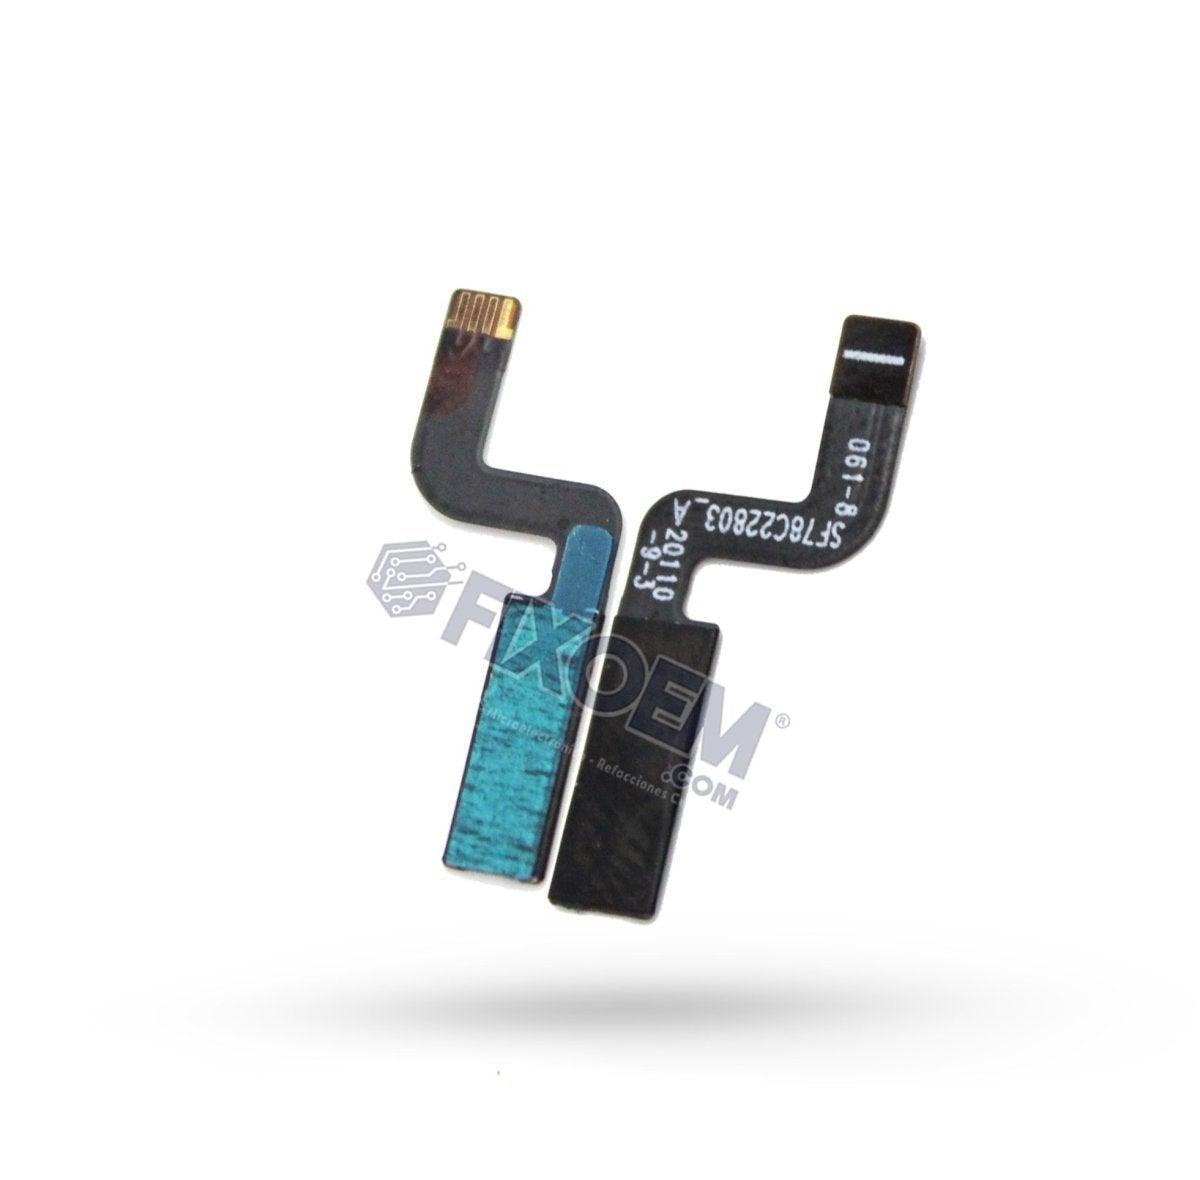 Flex Encendido Moto Z3 Play Xt1929 a solo $ 40.00 Refaccion y puestos celulares, refurbish y microelectronica.- FixOEM